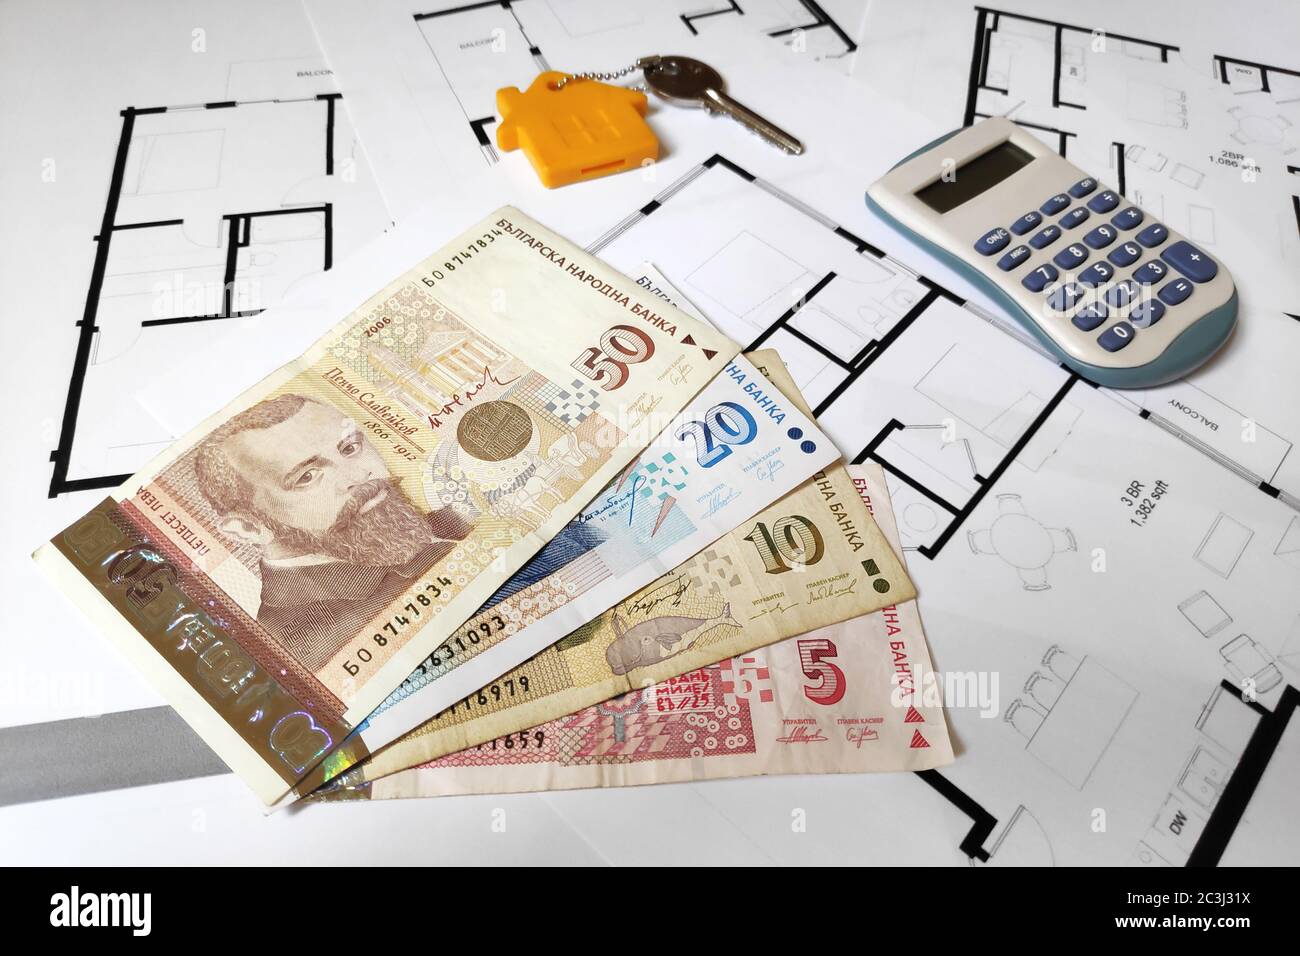 Nahaufnahme einiger bulgarischer Lew-Banknoten, eines Hausschlüssels und eines Rechners auf der Oberseite der Baupläne. Stockfoto